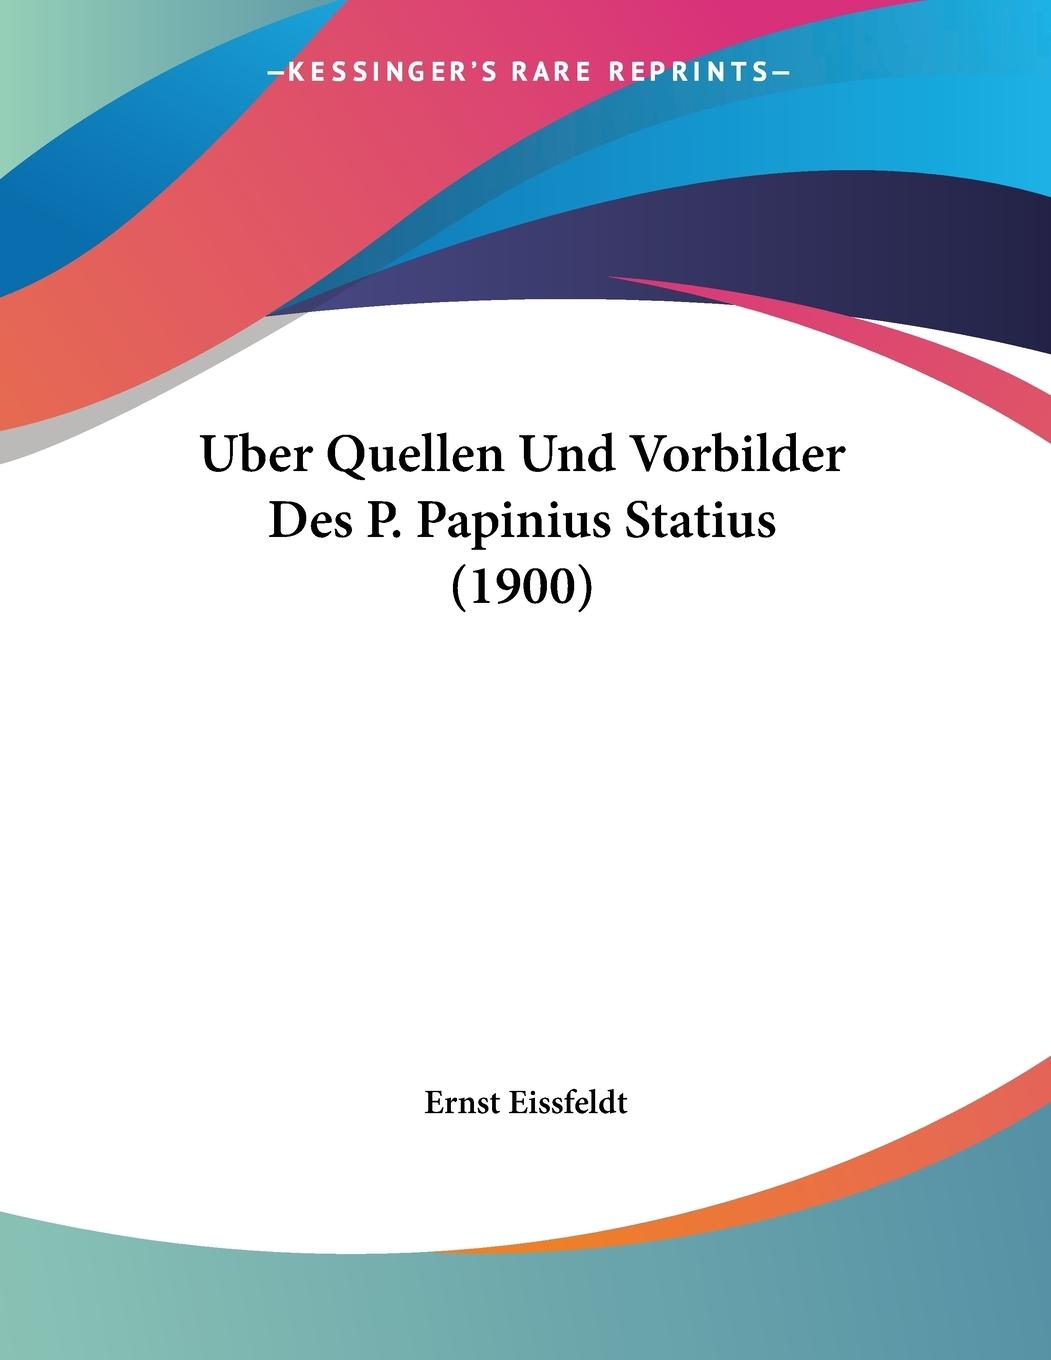 Uber Quellen Und Vorbilder Des P. Papinius Statius (1900) - Eissfeldt, Ernst